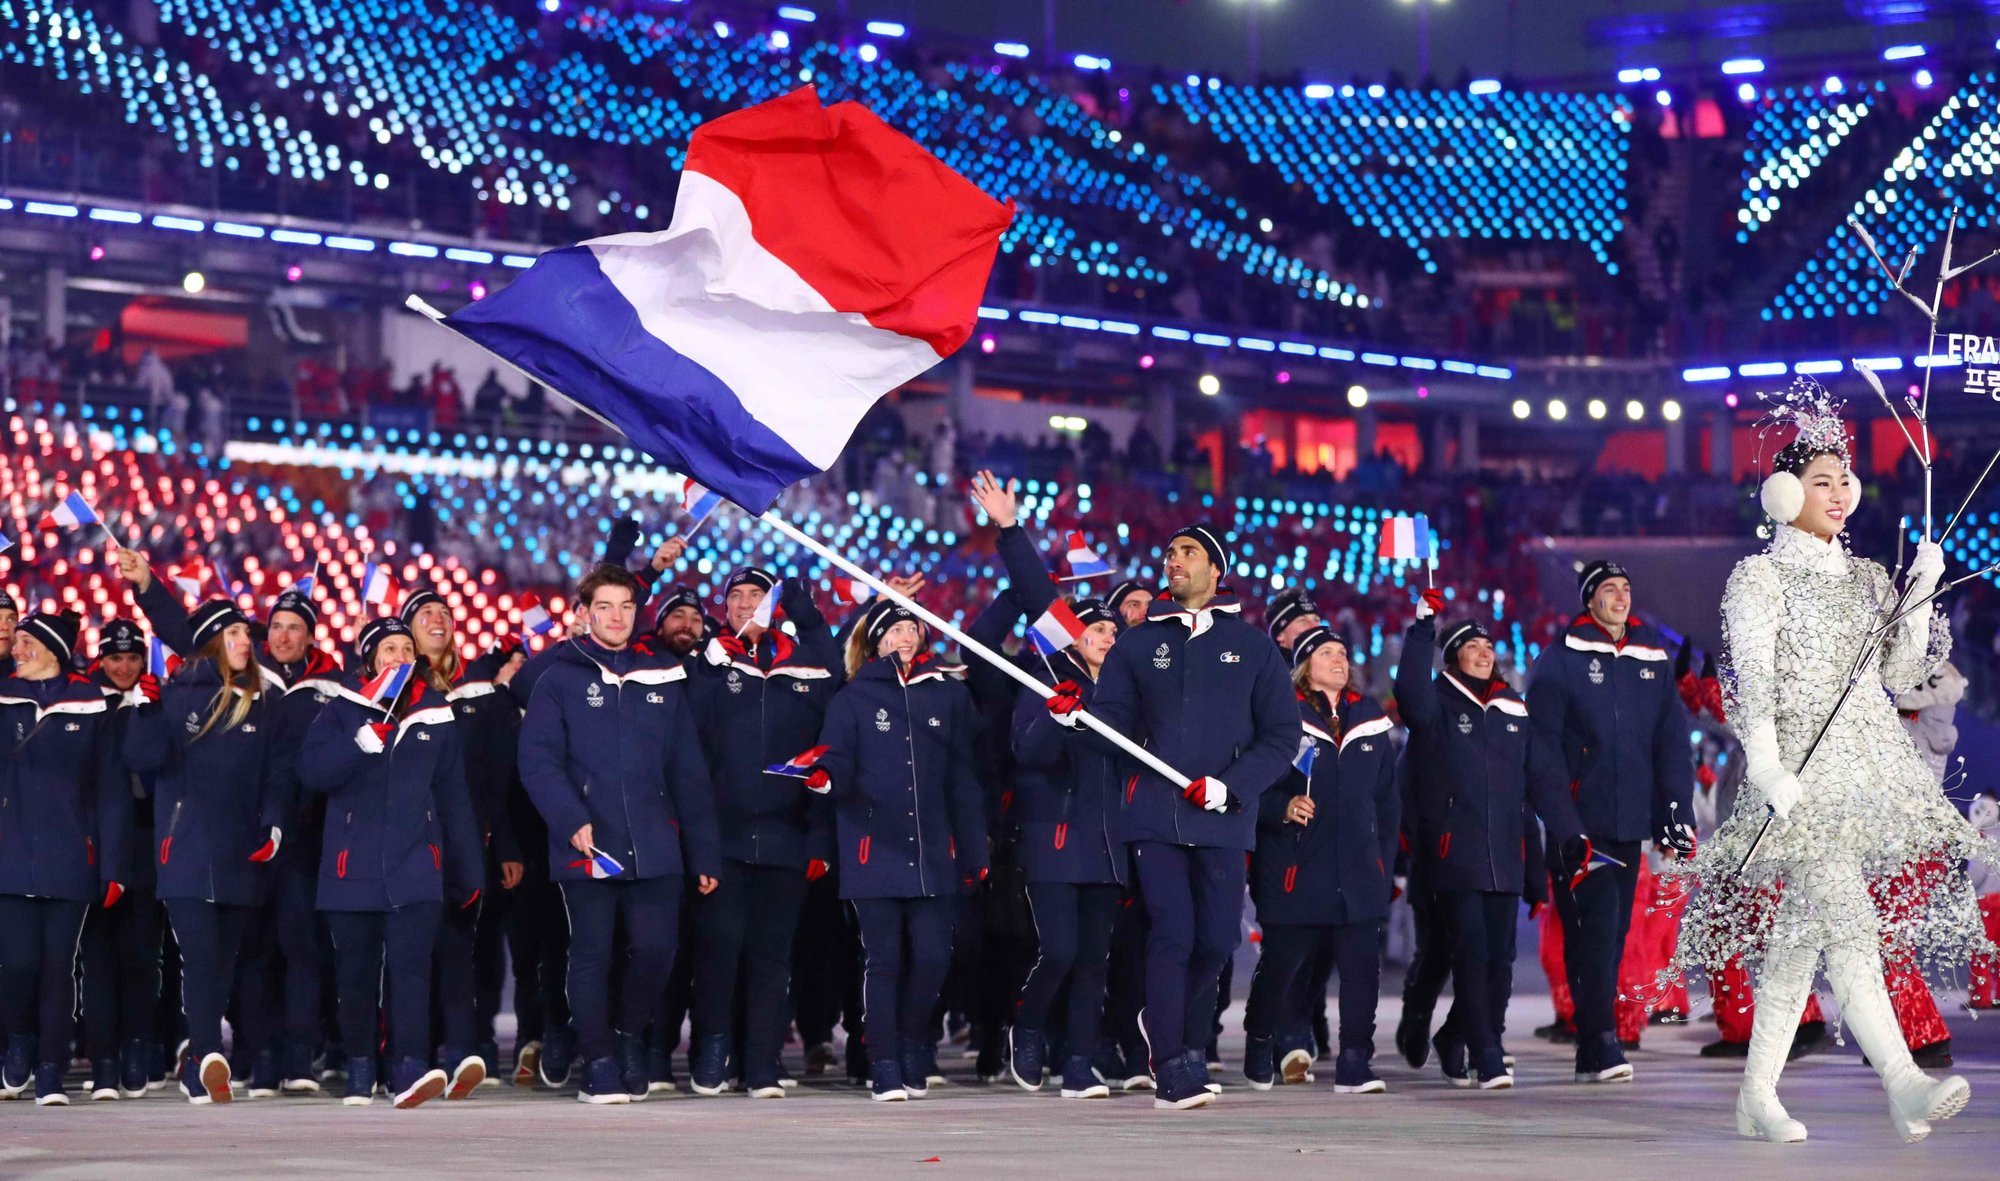 Церемония открытия соревнований. Церемония открытия Олимпийских игр 2018. Олимпийская сборная Франции. Сборная Франции на Олимпиаде форма.